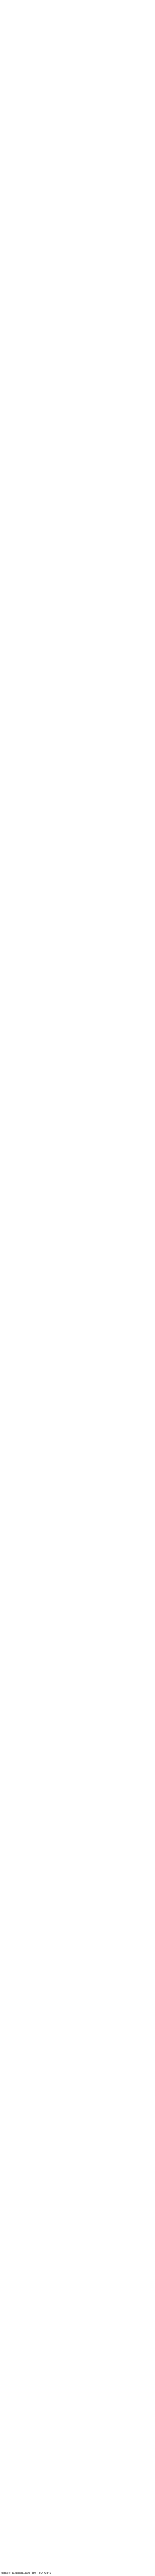 毛里求斯 淘宝 详情 页 旅行 天猫 海报 轮播 出境 海岛 海 淘宝界面设计 淘宝装修模板 白色